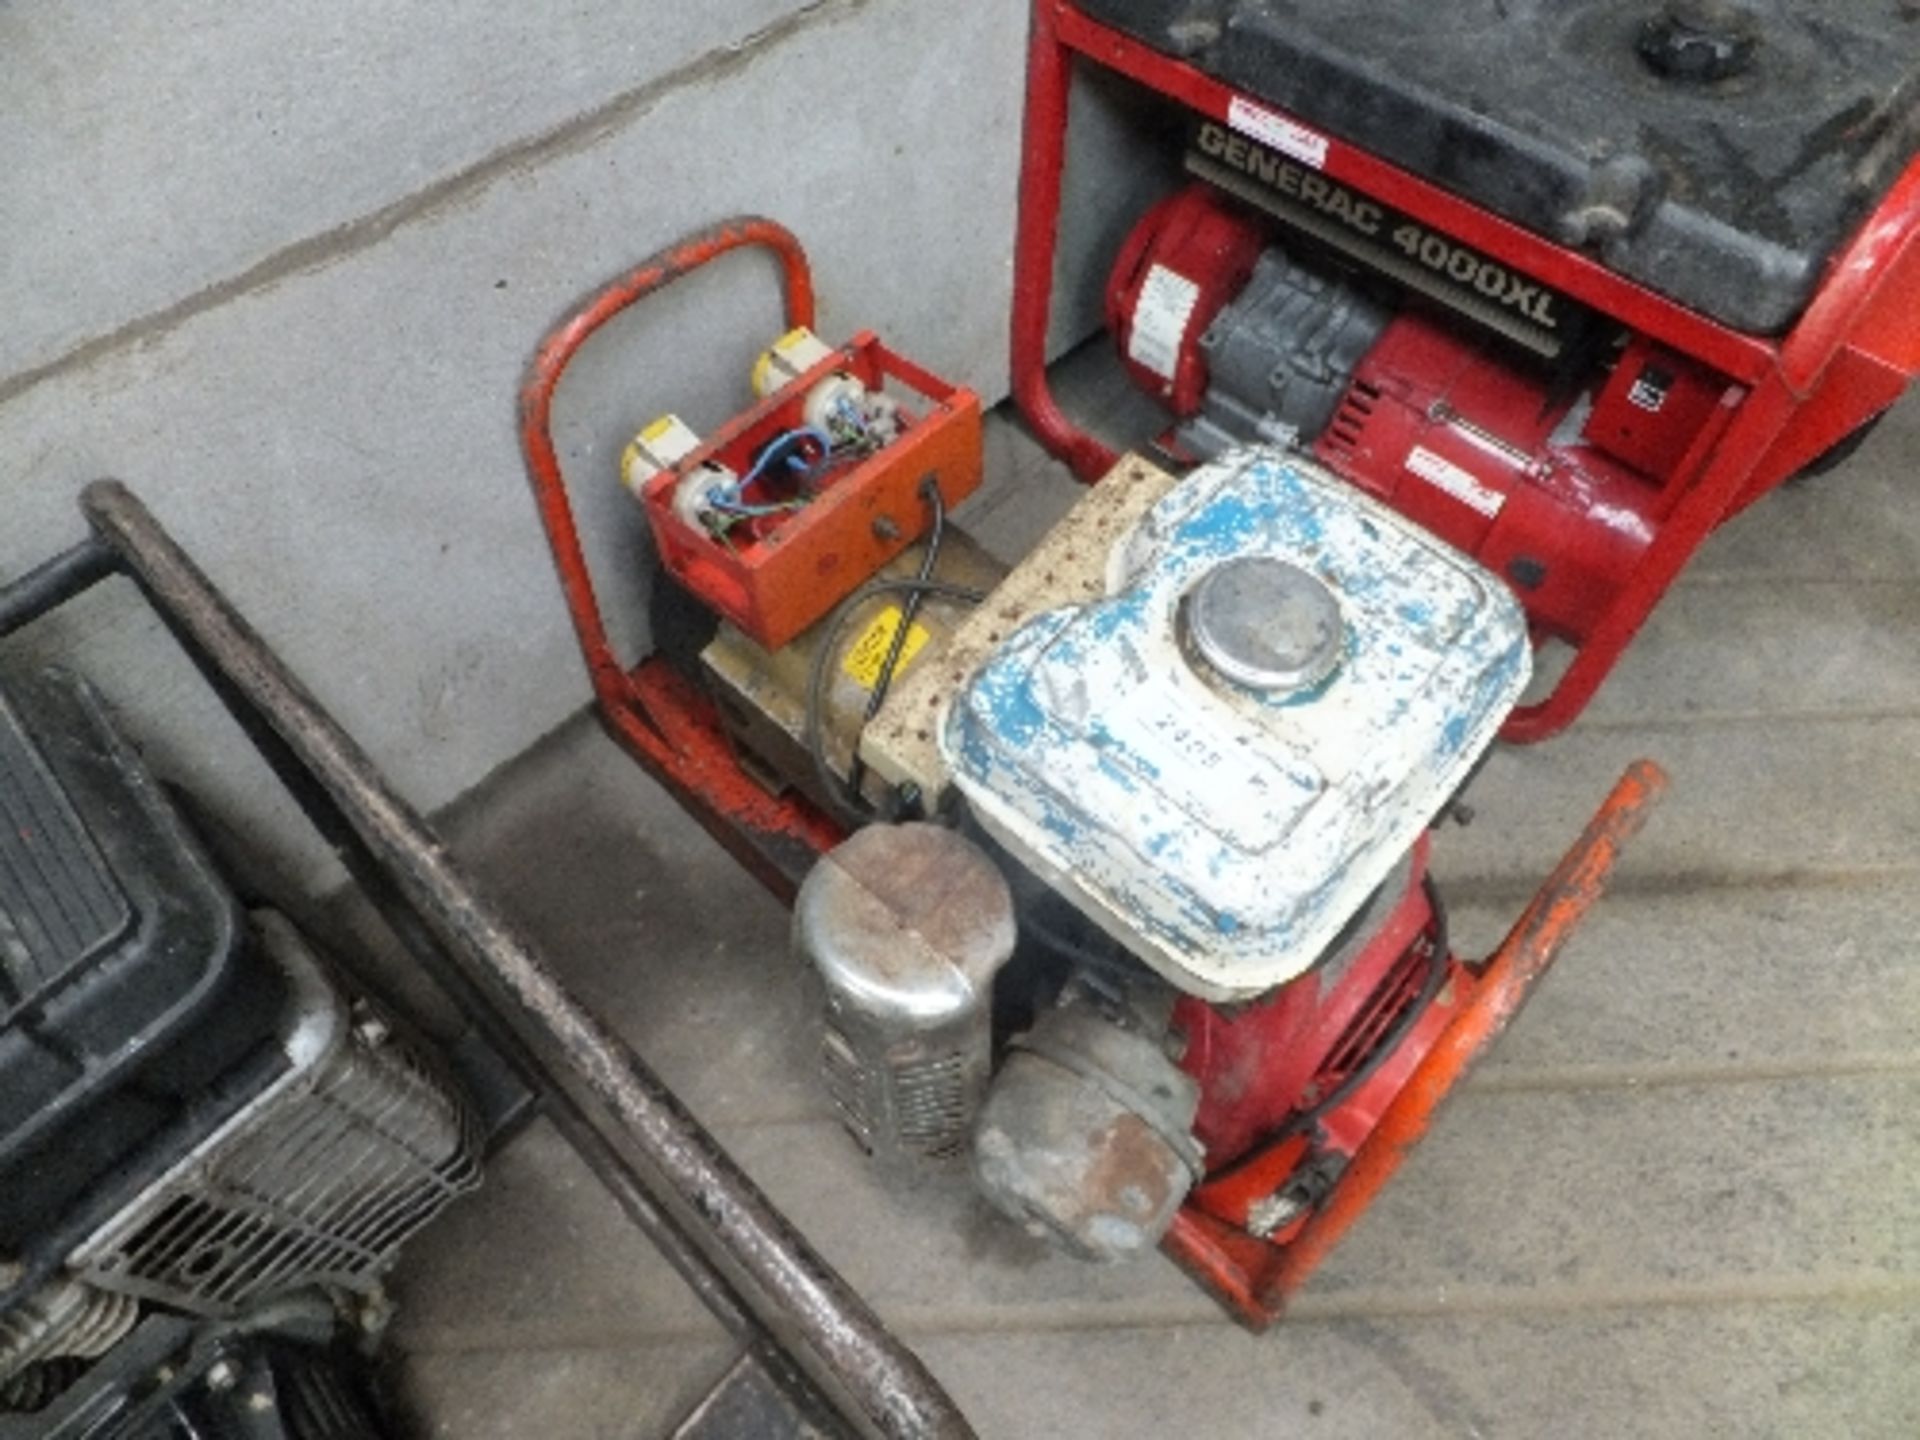 Petrol generator